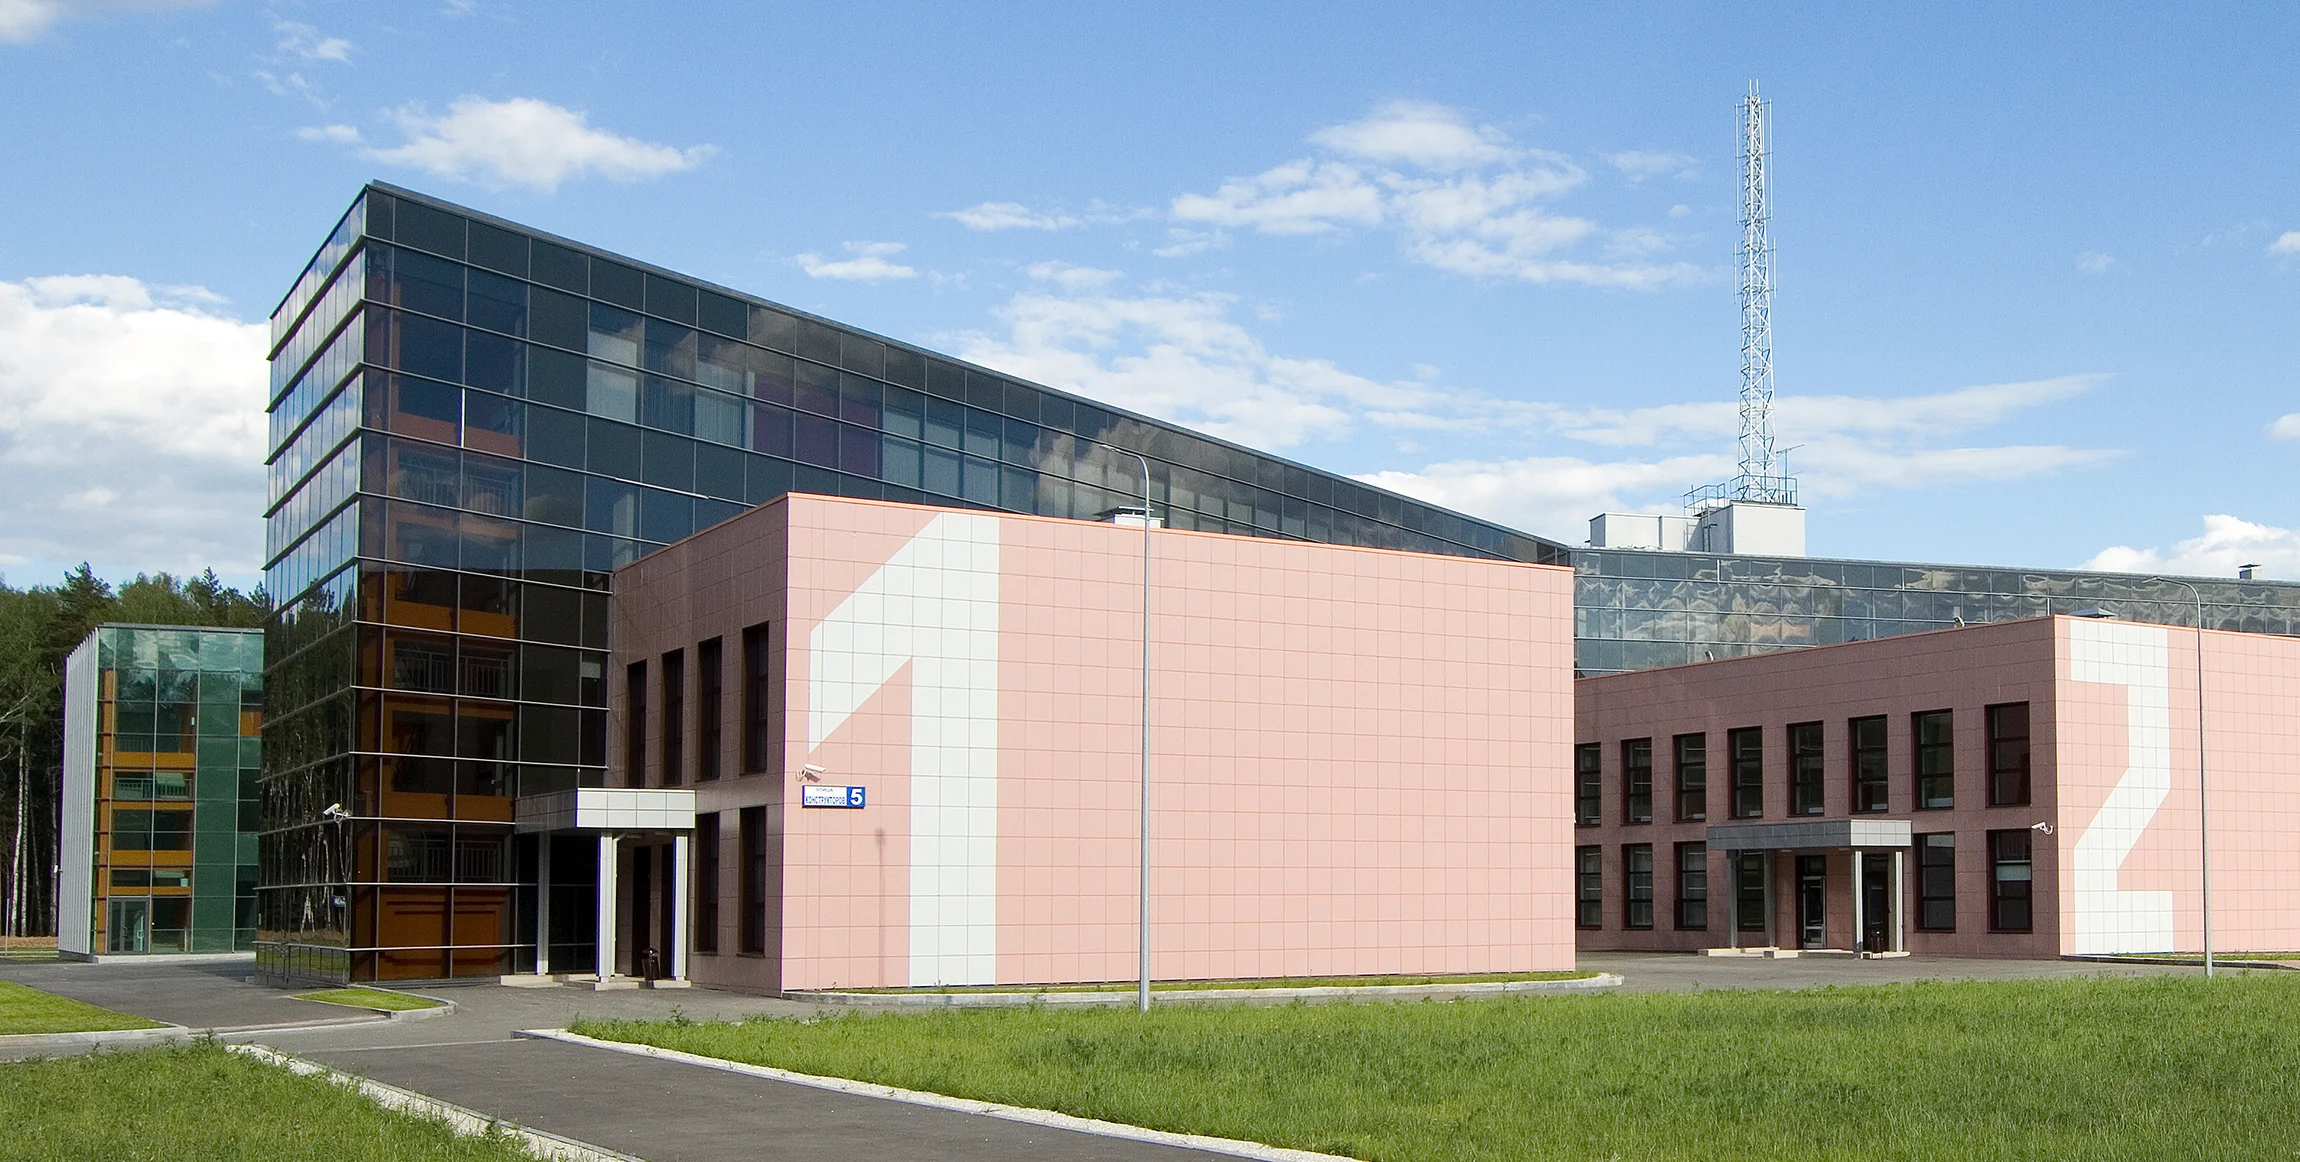 Офис компании Реиннольц располагается на территории "Технопарка высоких технологий"